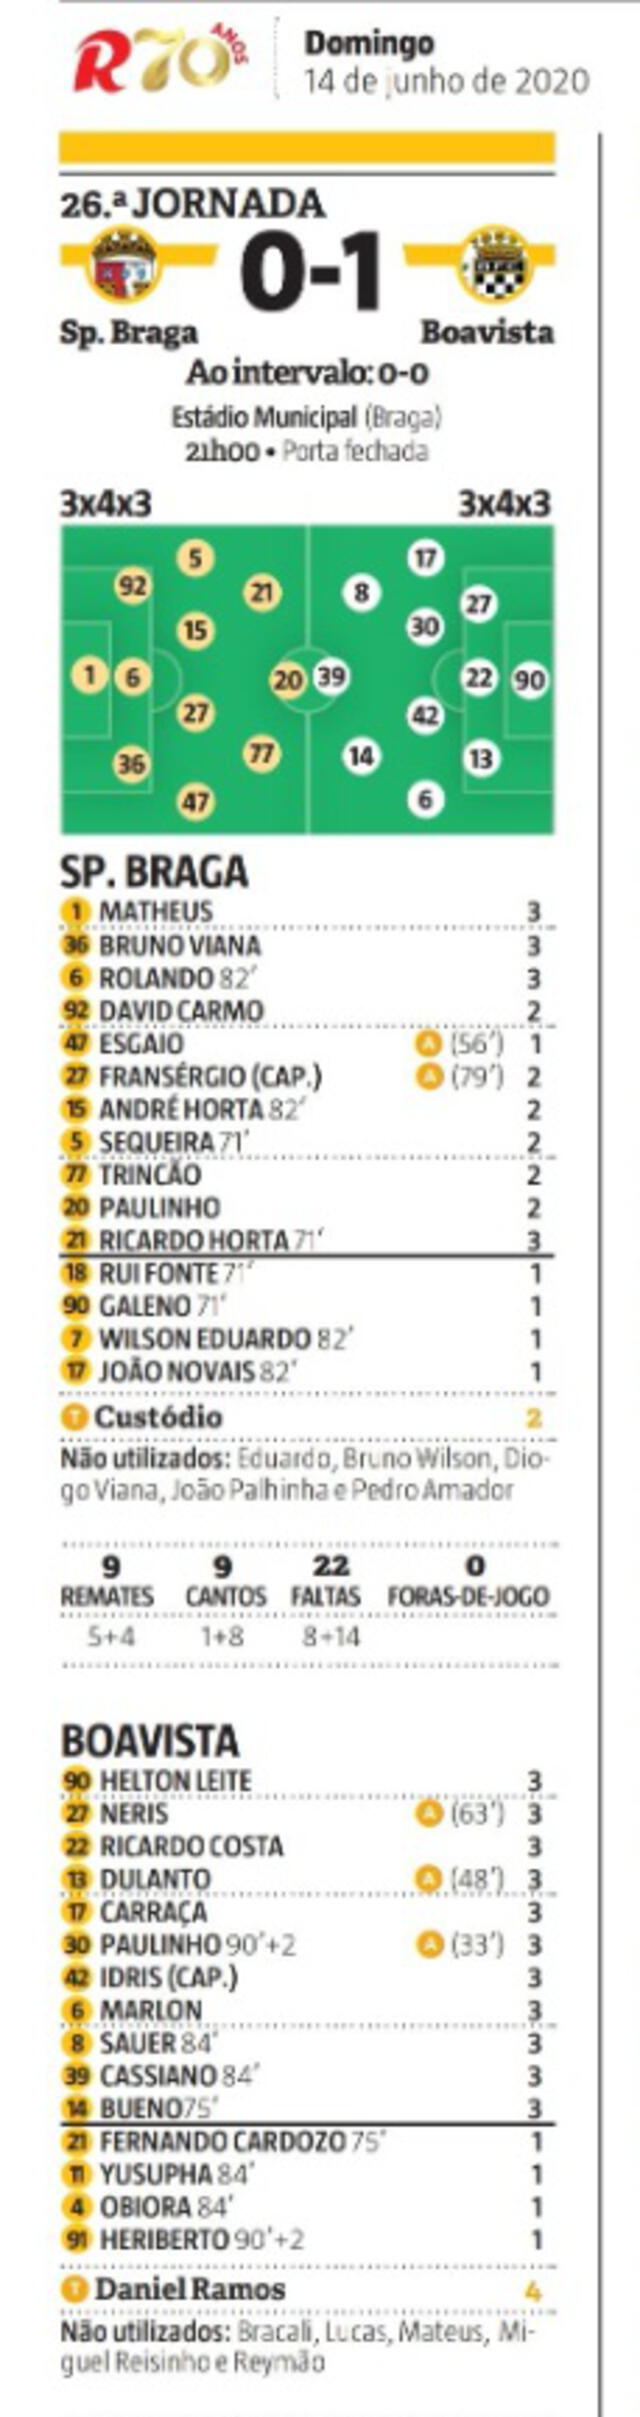 Prensa portuguesa elogia a Gustavo Dulanto y lo califican con 7 puntos.